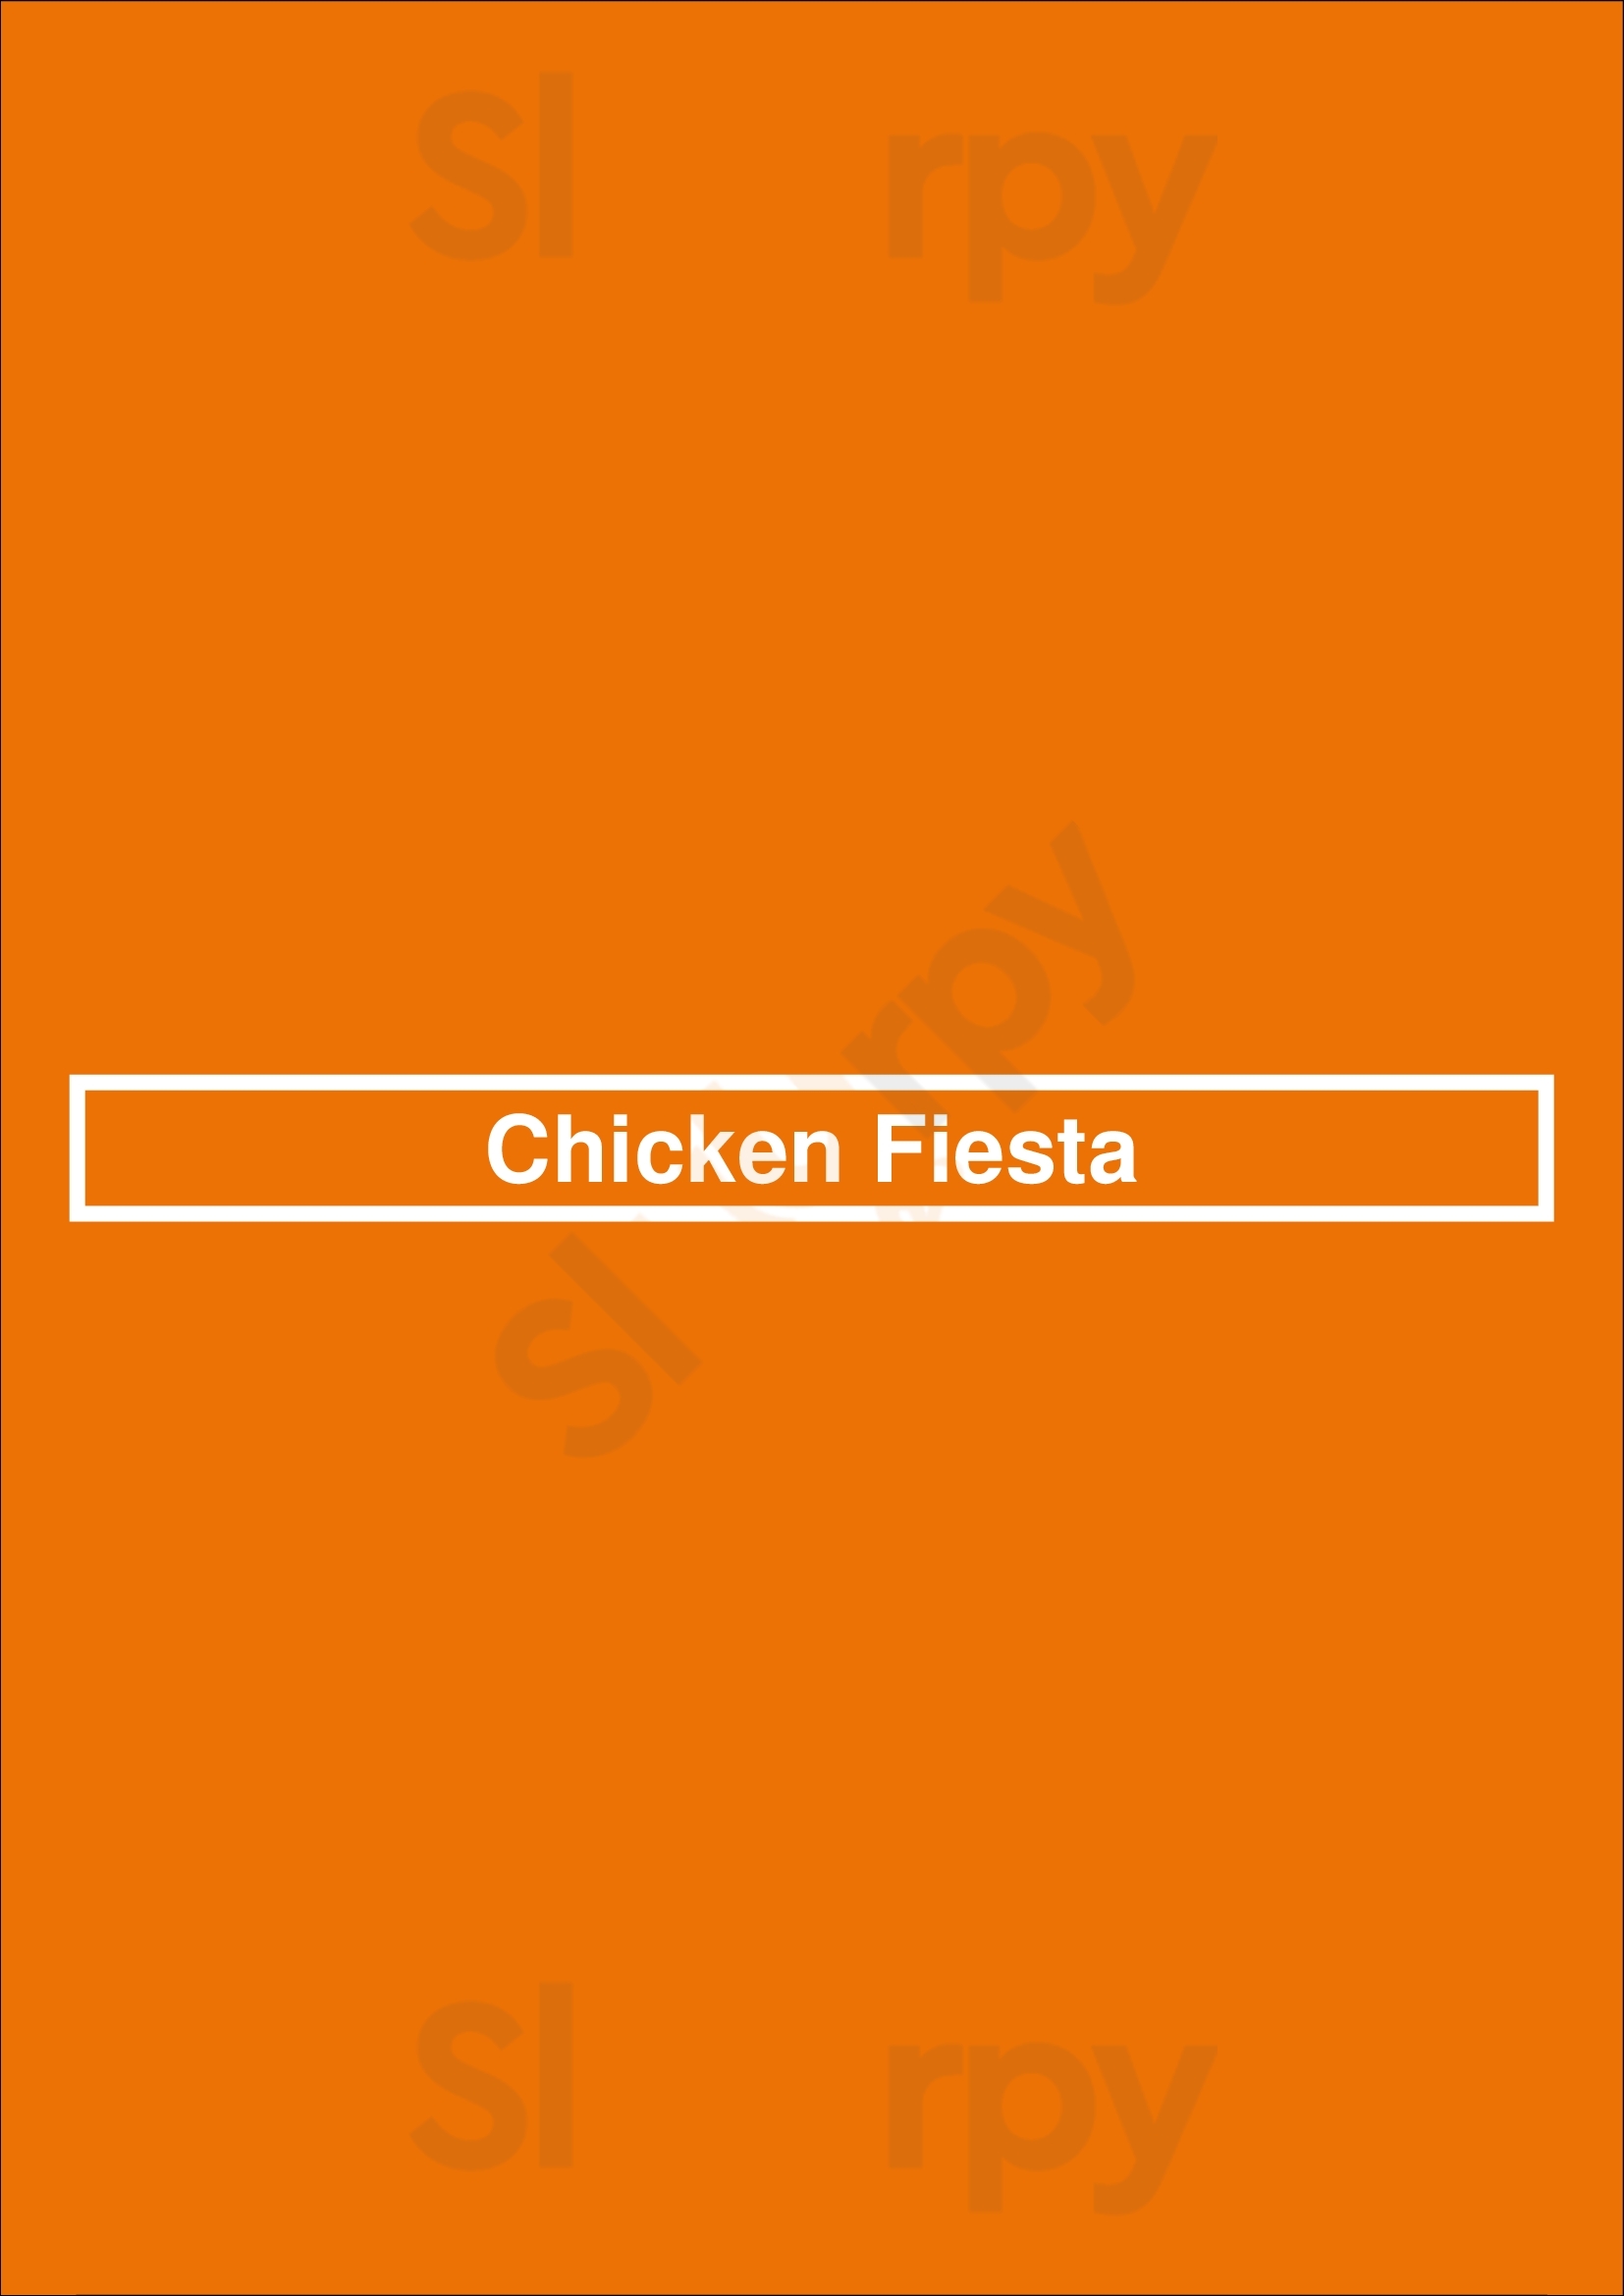 Chicken Fiesta Richmond Menu - 1